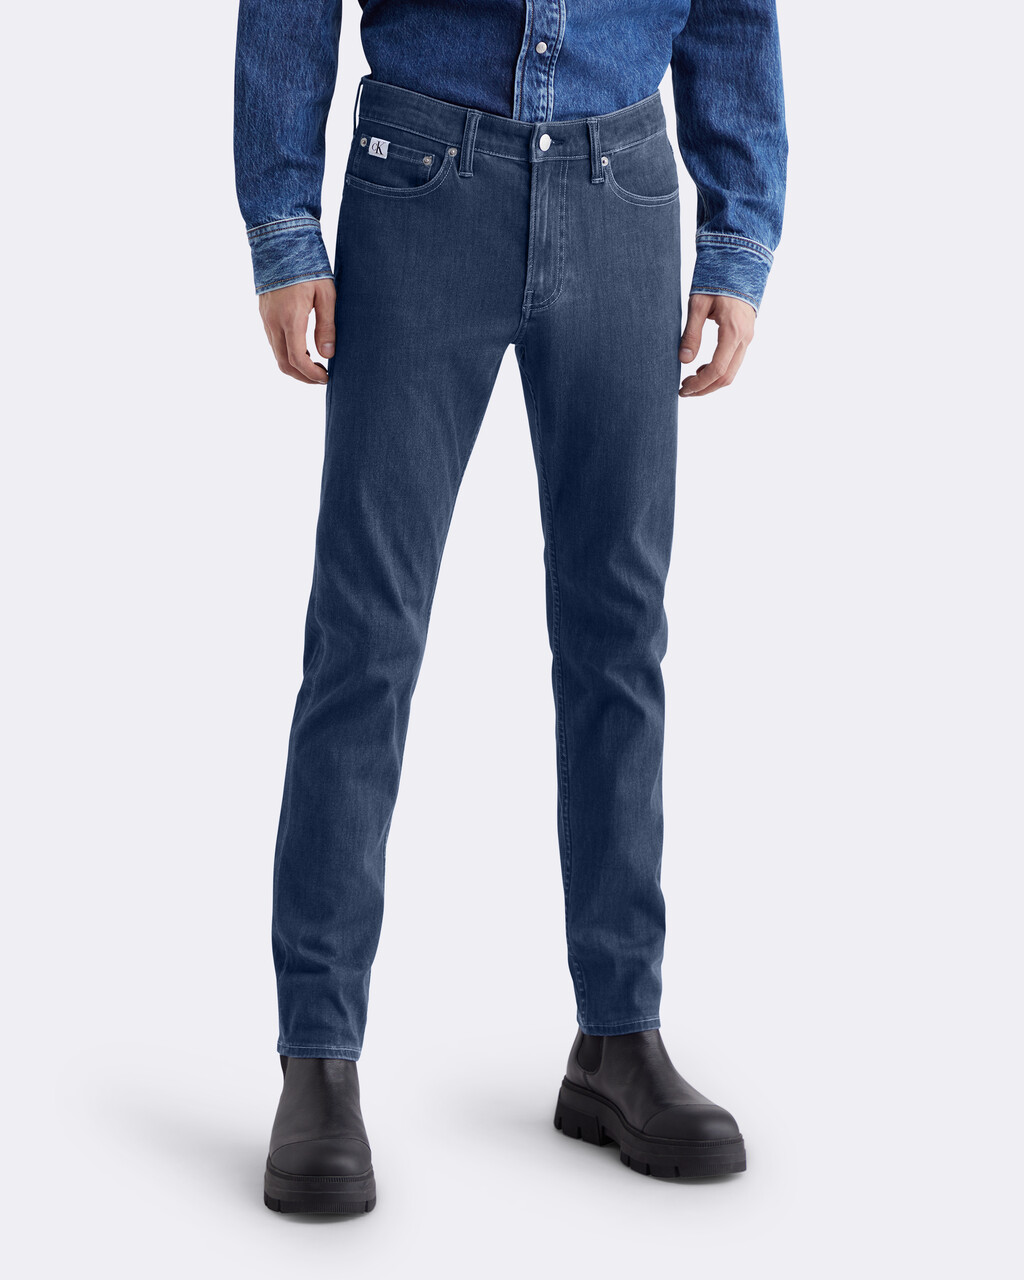 37.5 Bi-Stretch Slim Jeans, 061B DARK BLUE, hi-res